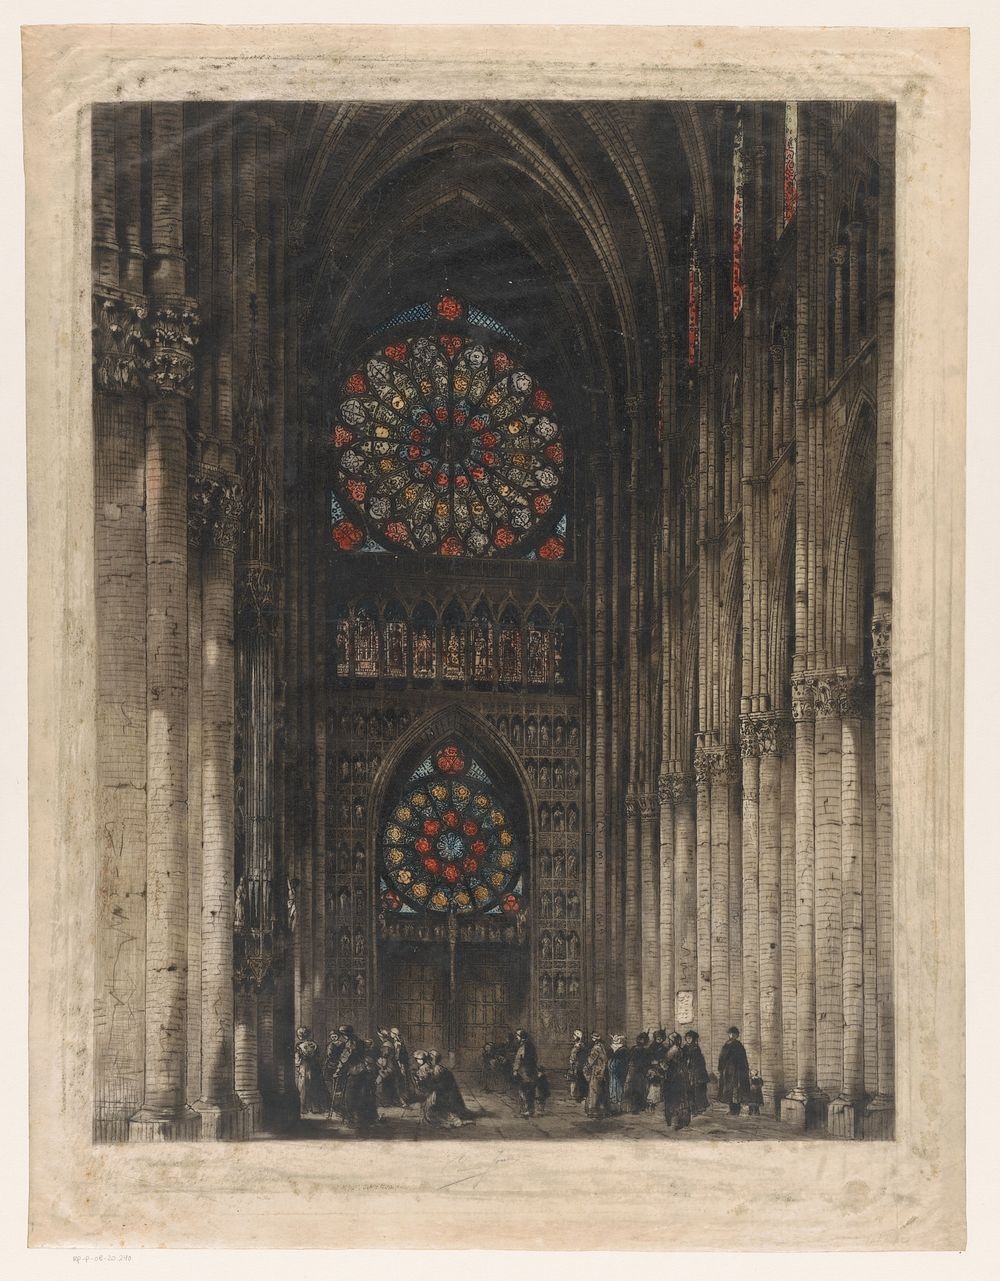 Gezicht op de roosvensters van de Kathedraal van Reims (1915) by Ad Valcke and Arthur and Sons Tooth